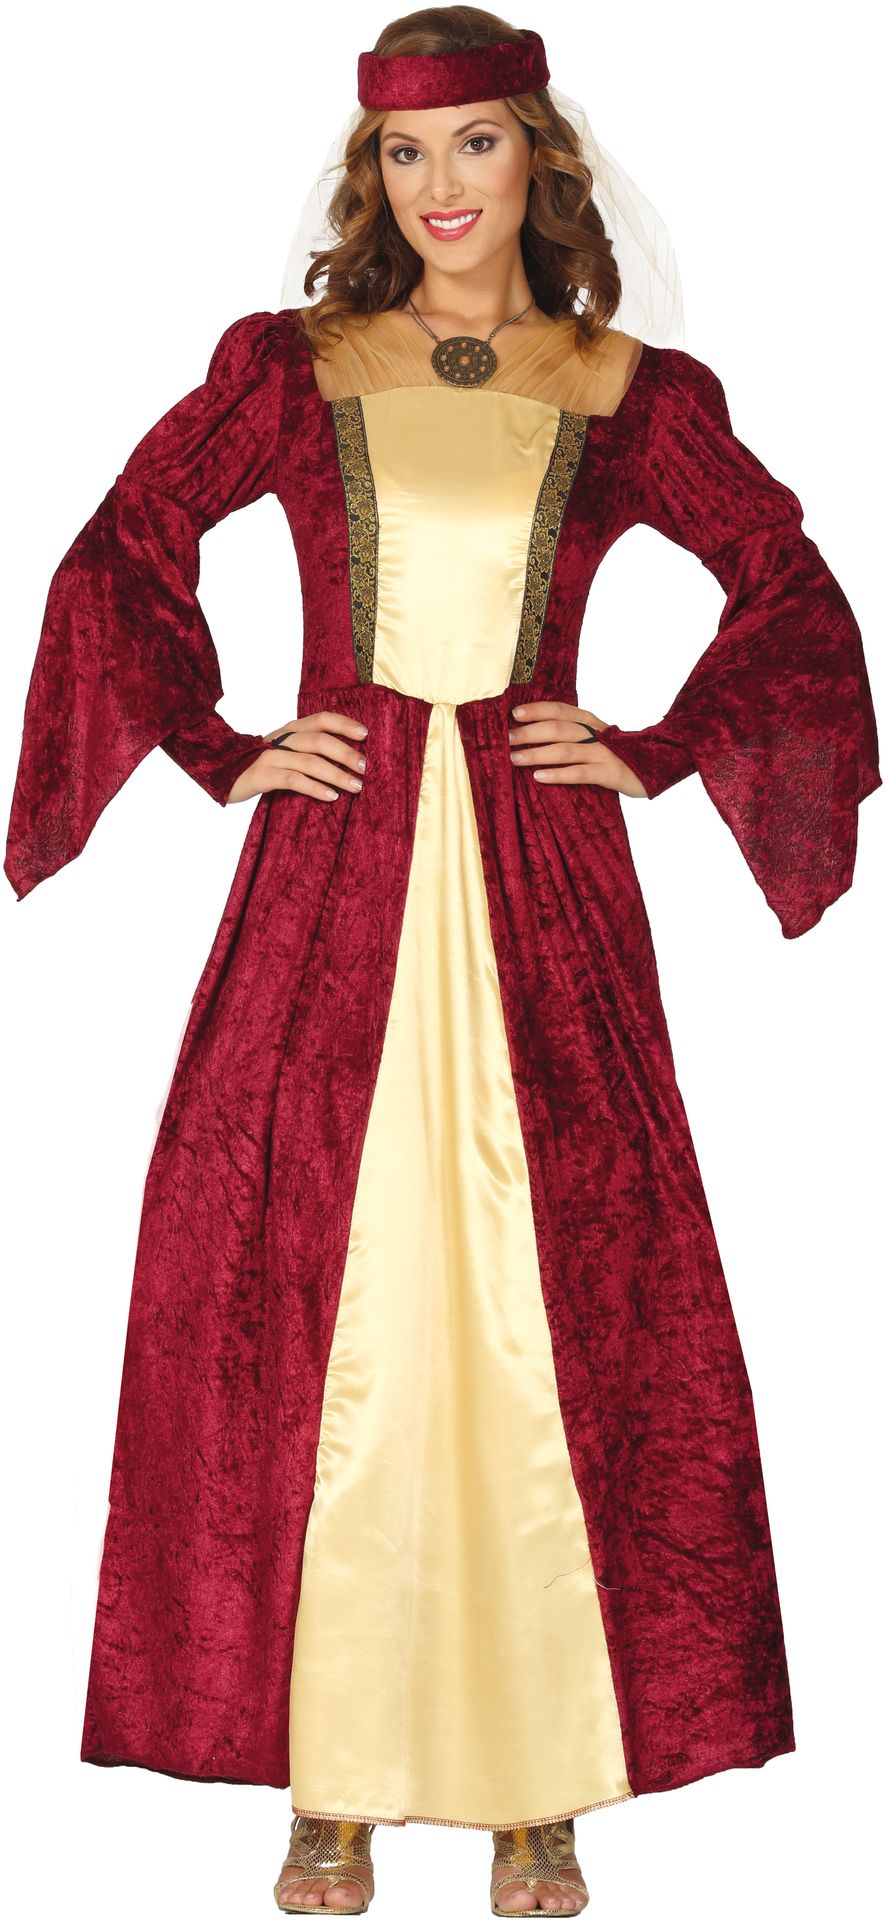 Middeleeuwse vrouw kostuum